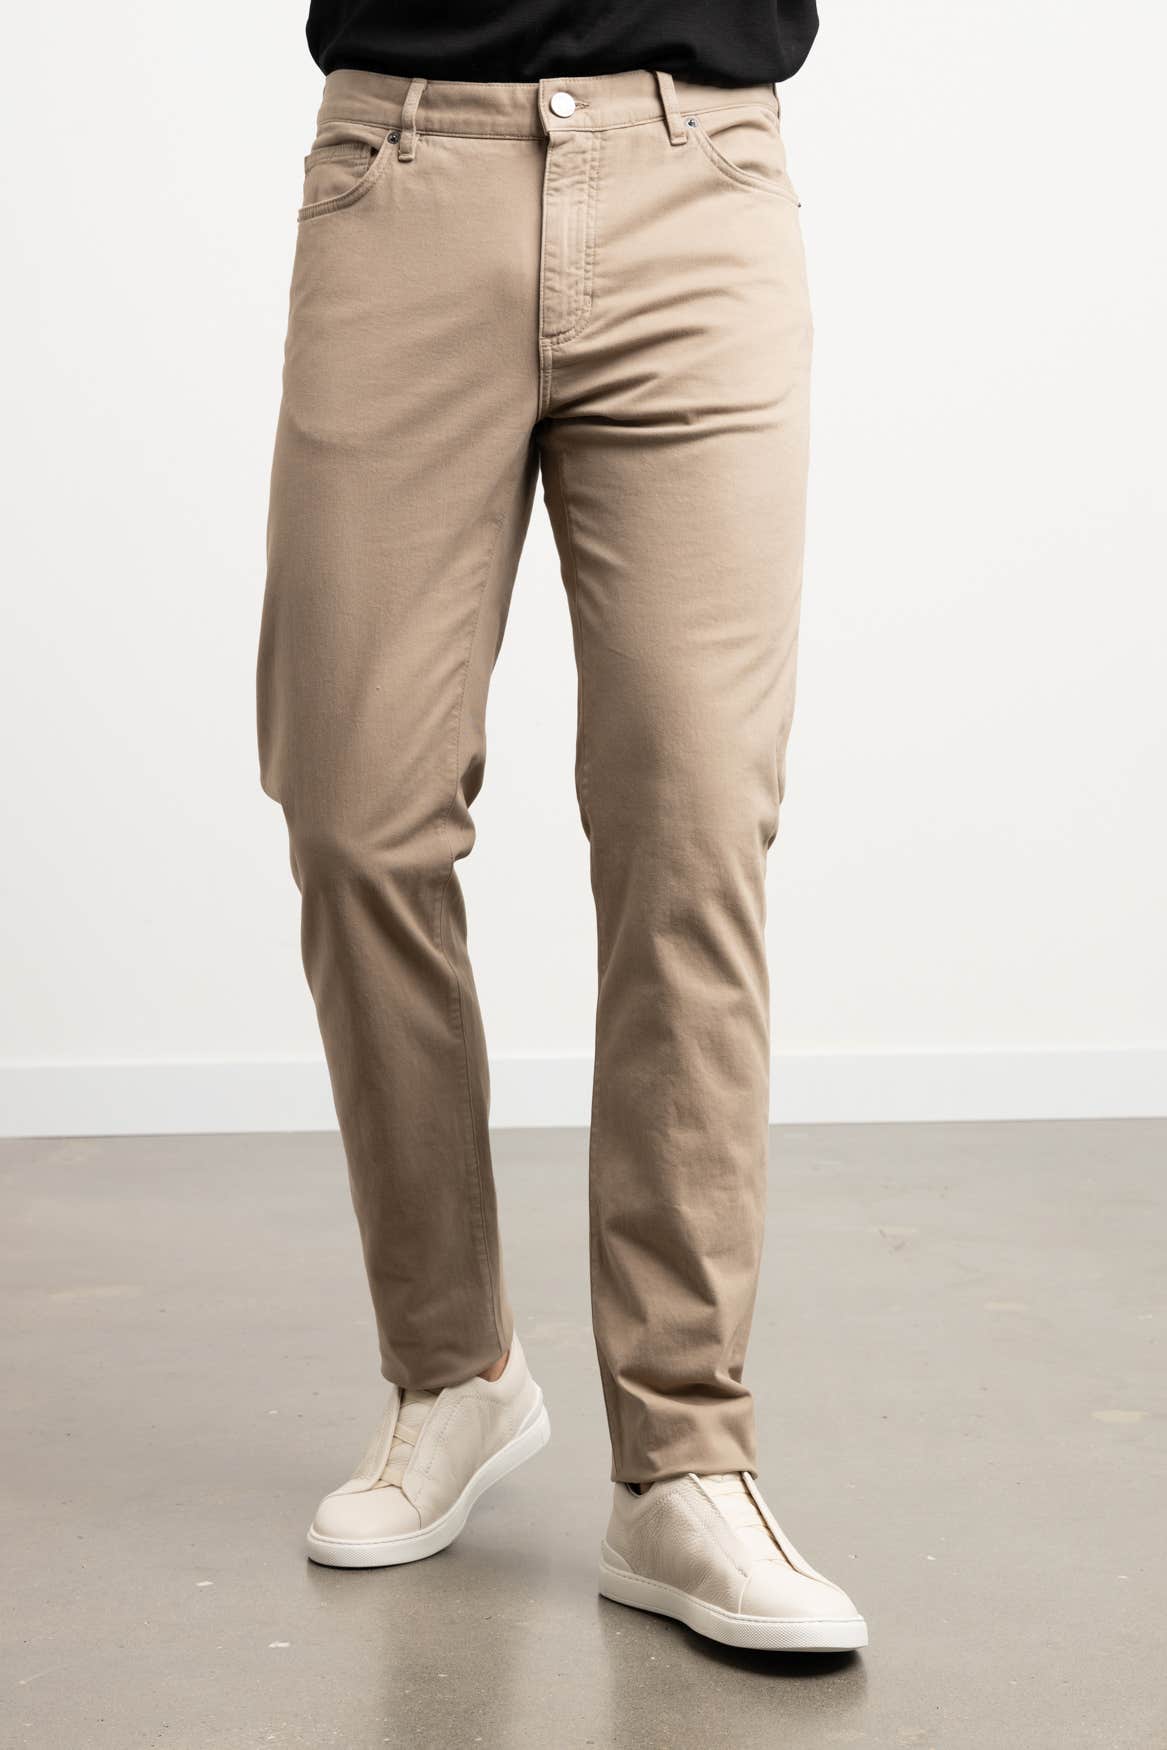 Pantalon Homme Coton Stretch Beige